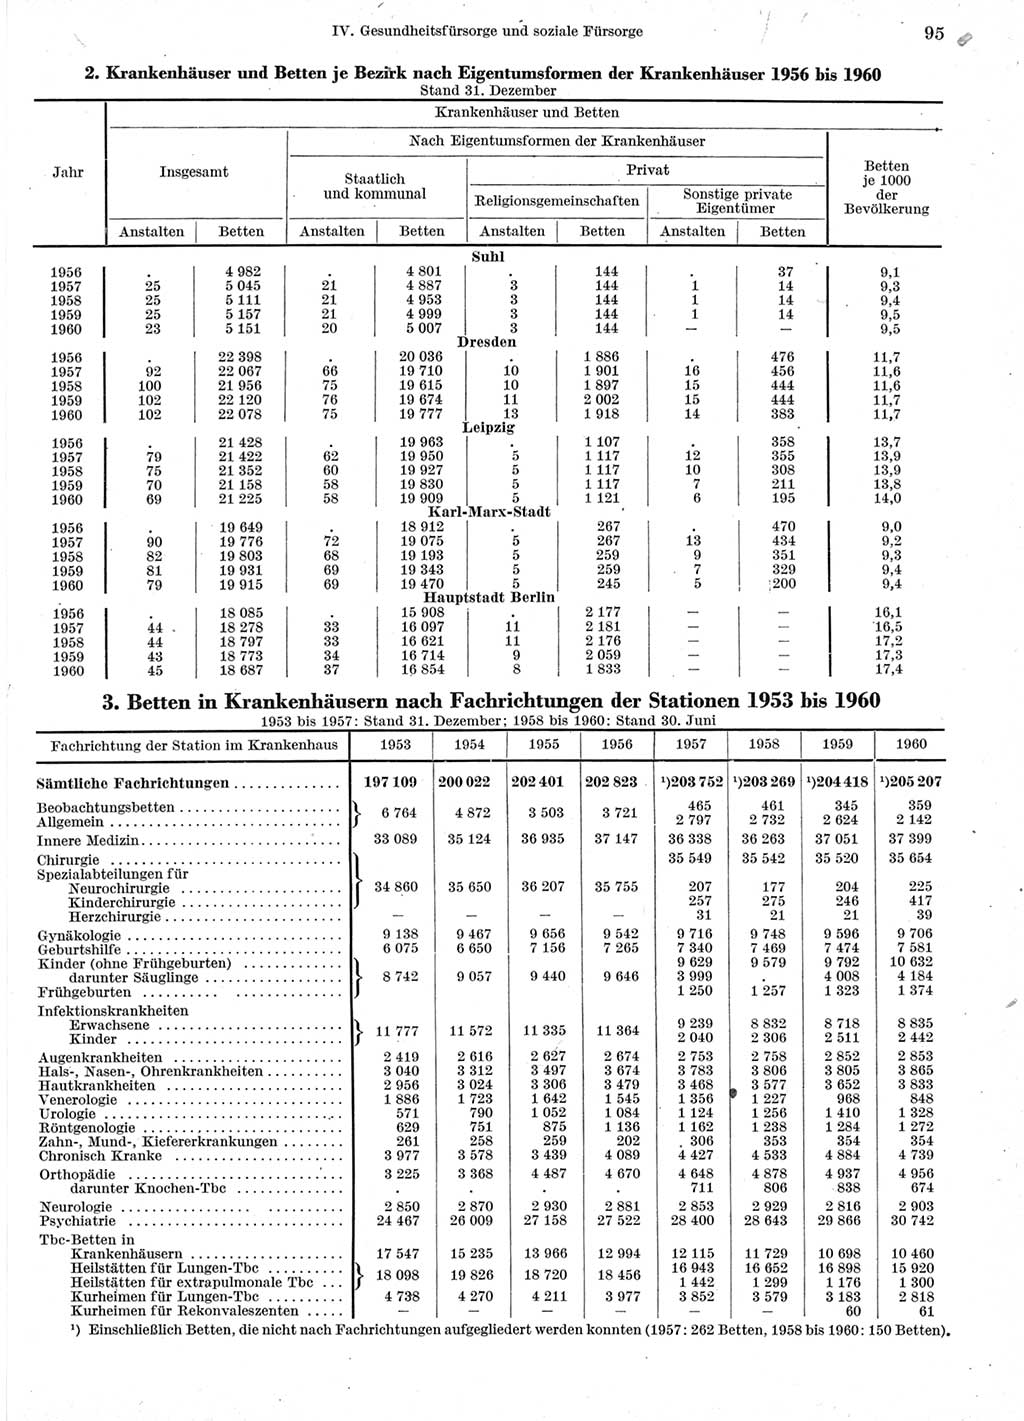 Statistisches Jahrbuch der Deutschen Demokratischen Republik (DDR) 1960-1961, Seite 95 (Stat. Jb. DDR 1960-1961, S. 95)